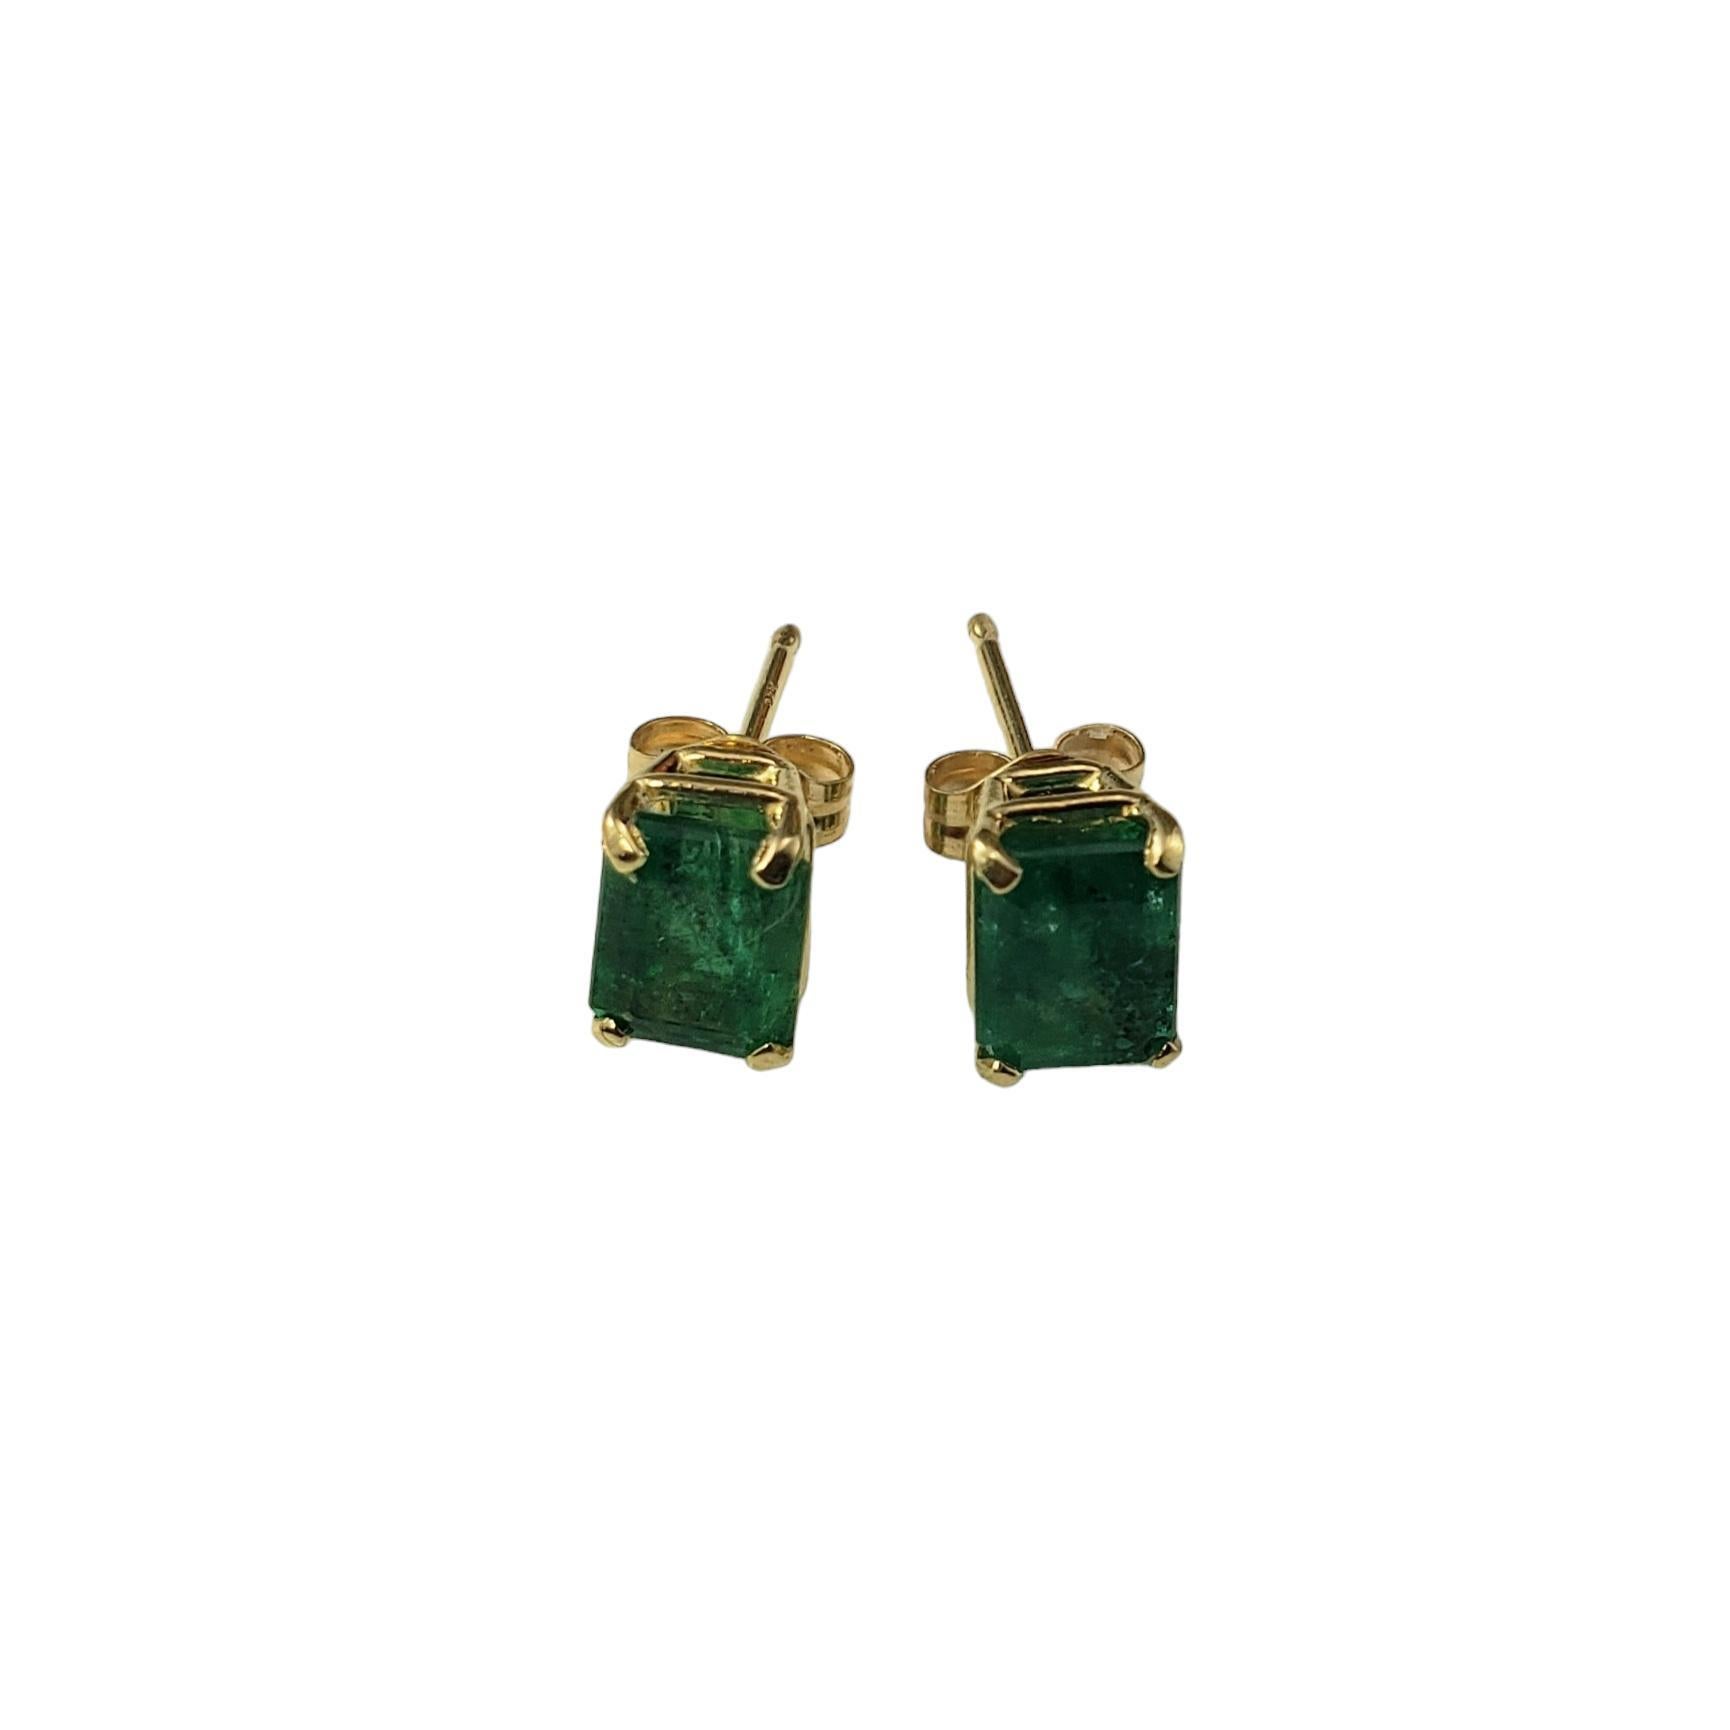 14K Gelbgold Smaragd-Ohrringe JAGi zertifiziert

Diese atemberaubenden Ohrringe sind mit je einem runden natürlichen Smaragd im Smaragdschliff (6,3 mm x 5,0 mm) in klassischem 14 Karat Gelbgold gefasst. 

 Push-Back-Verschlüsse.

Passender Anhänger: